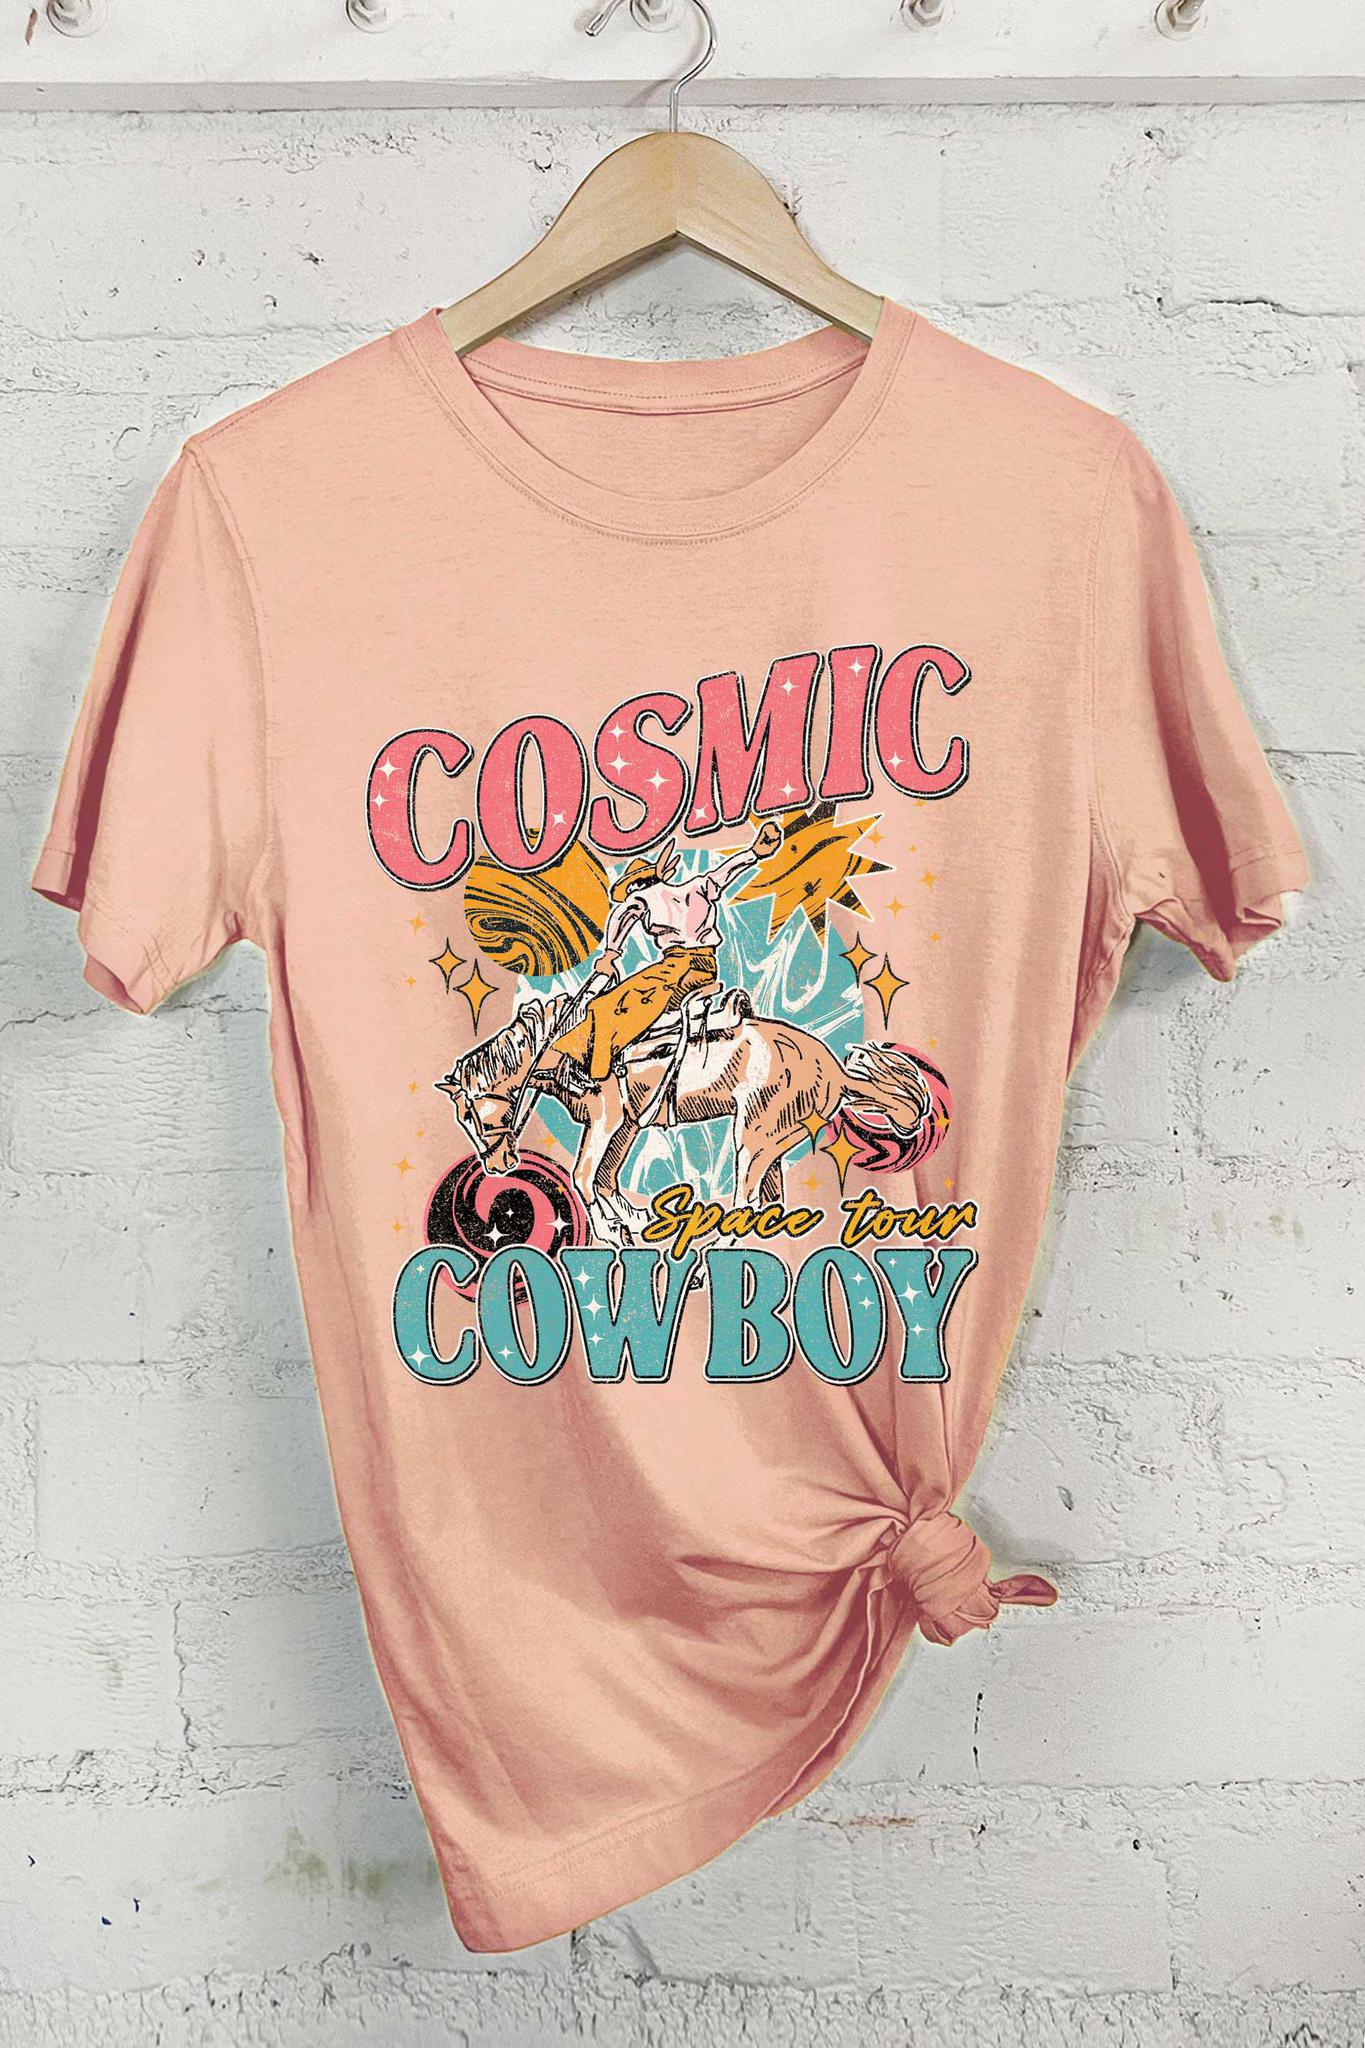 Cosmic Cowboy Tee